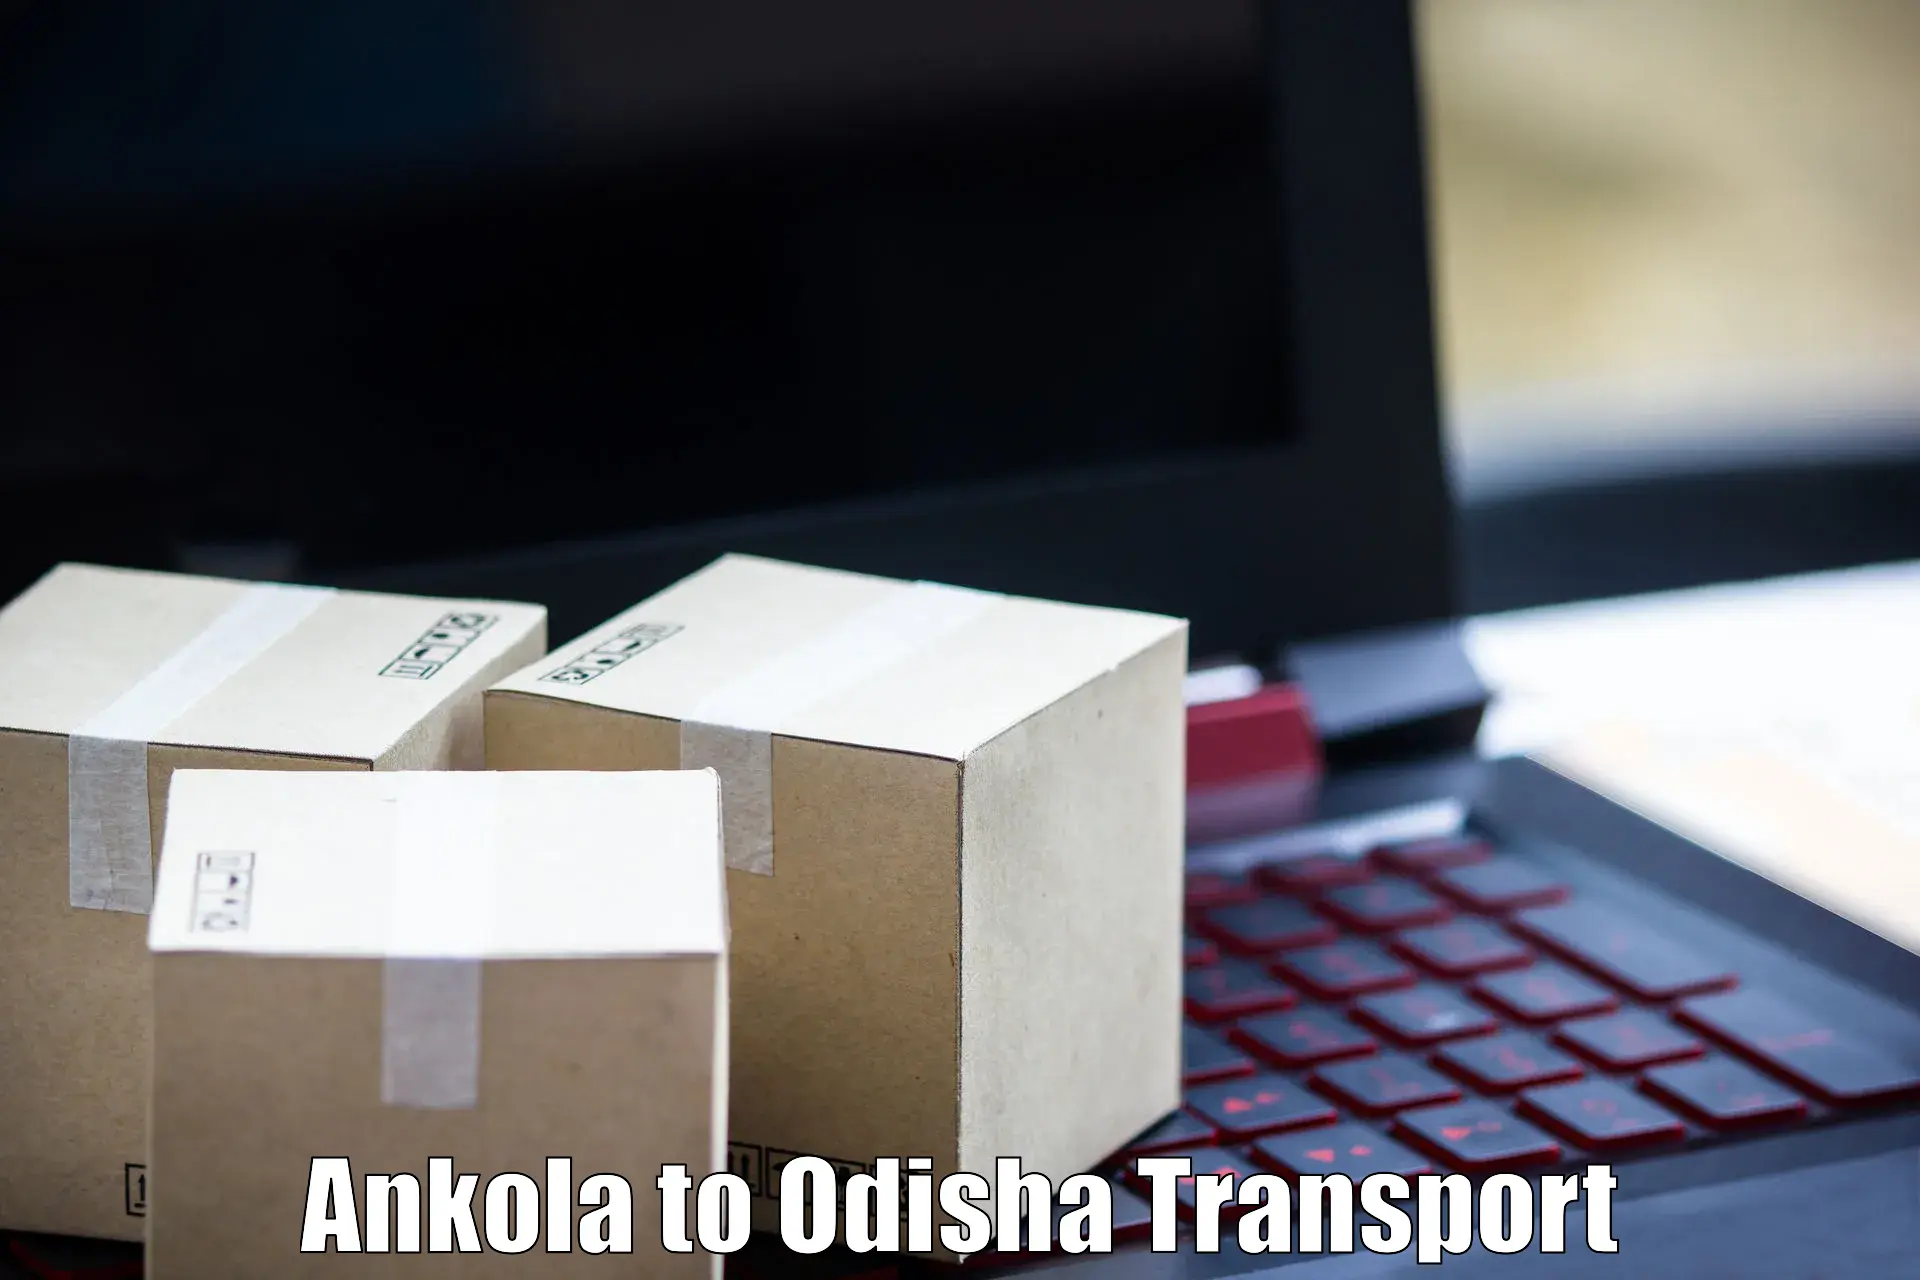 Express transport services Ankola to Odisha